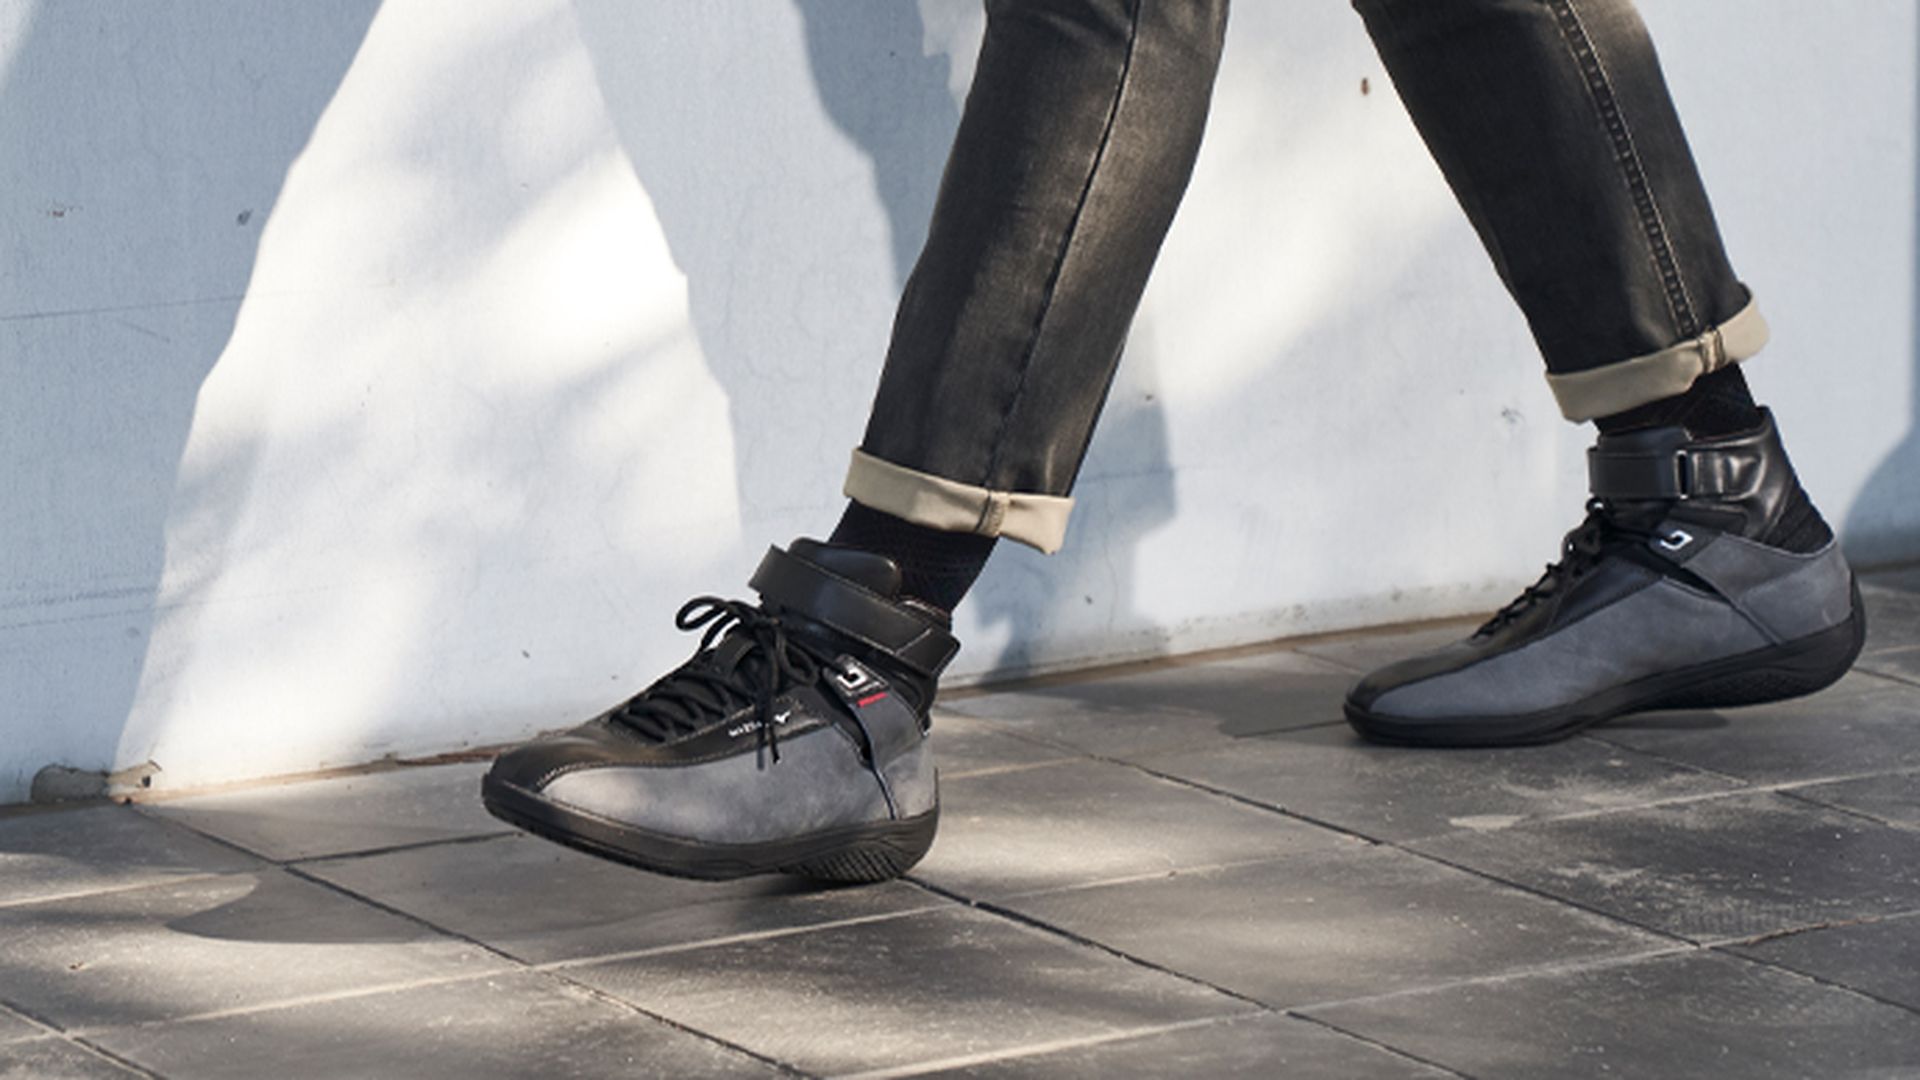 Zapatillas para conducir 'Kodo Sneaker'